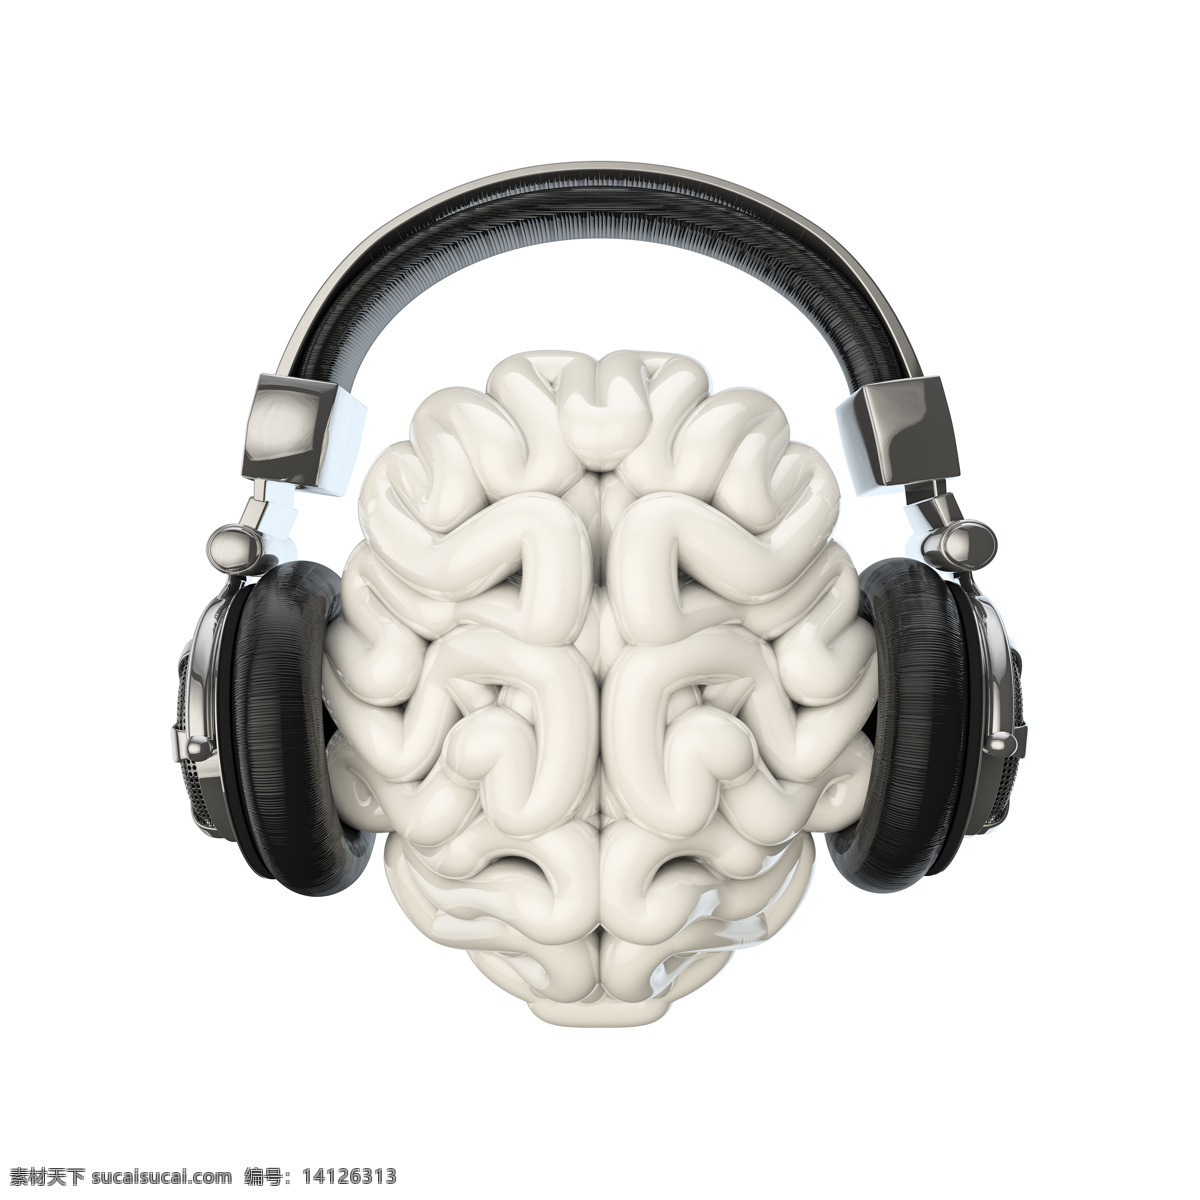 大脑听音乐 3d设计 创意 创意设计 大脑 耳机 耳麦 歌曲 创意大脑 脑子 听音乐 听觉 听力 声音 另类 音乐 乐曲 另类设计 时尚设计 3d模型素材 其他3d模型